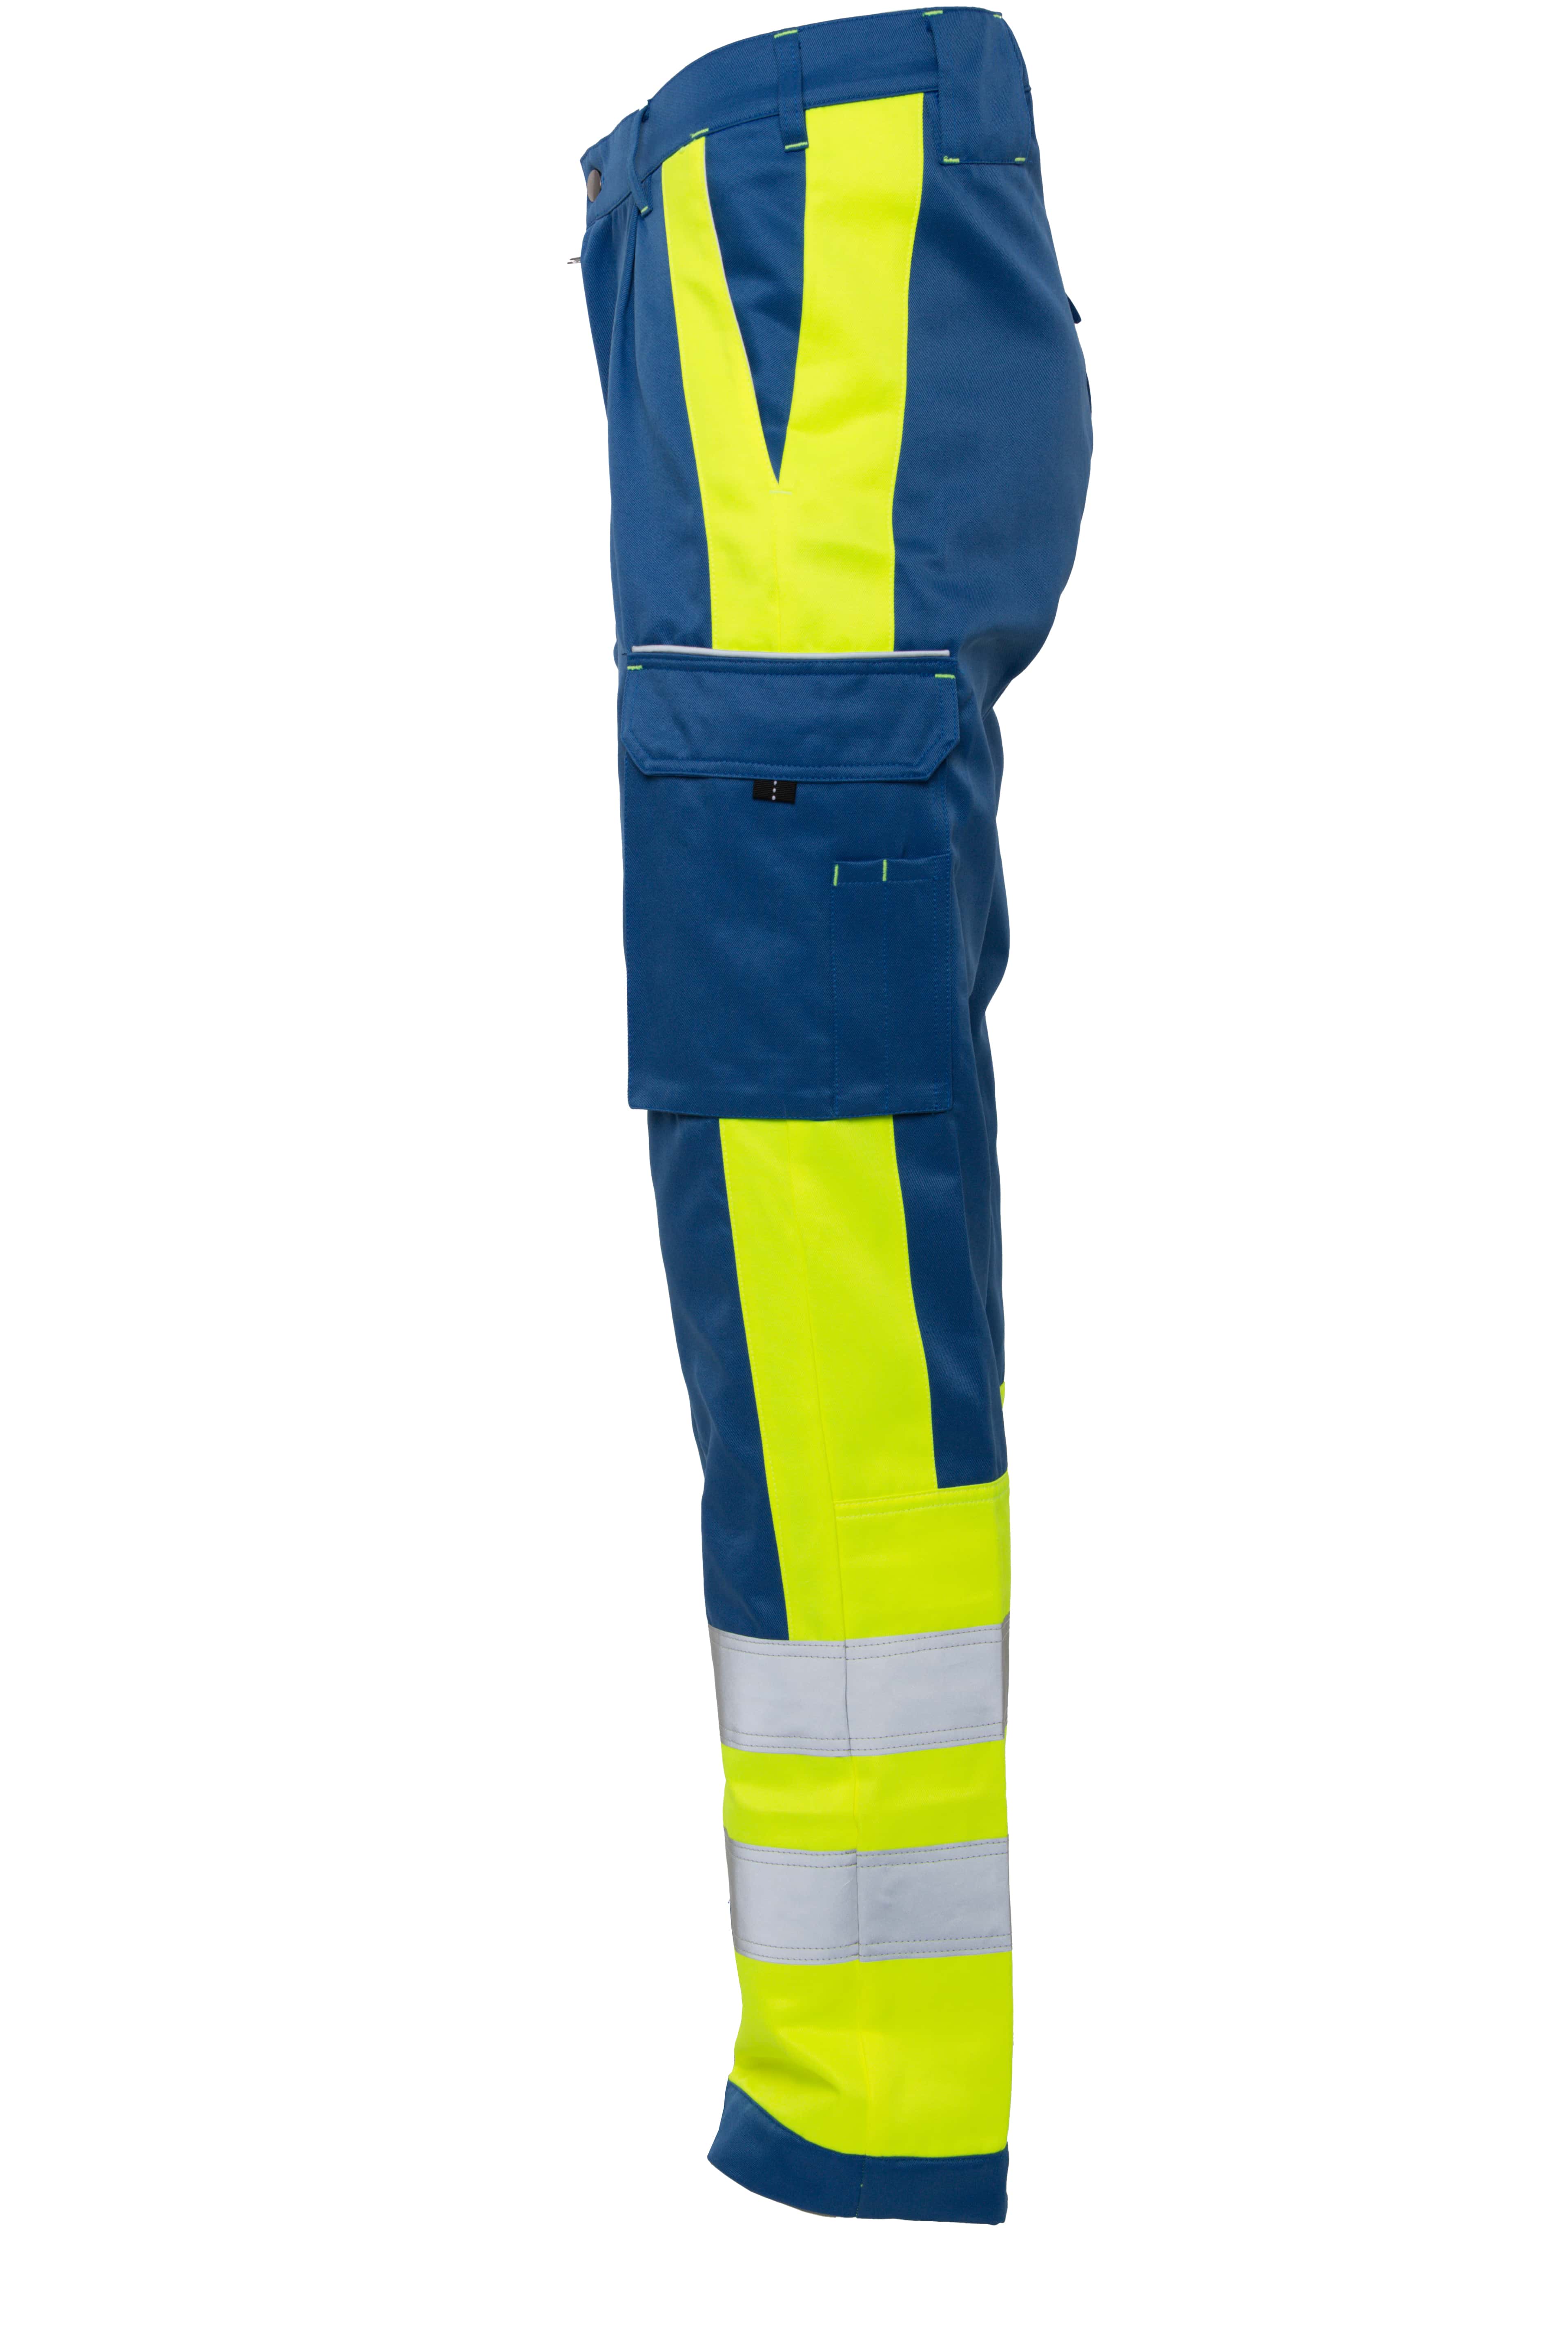 Rescuewear Unisex Hose Dynamic HiVis Klasse 1 Kobaltblau / Neon Gelb - 58